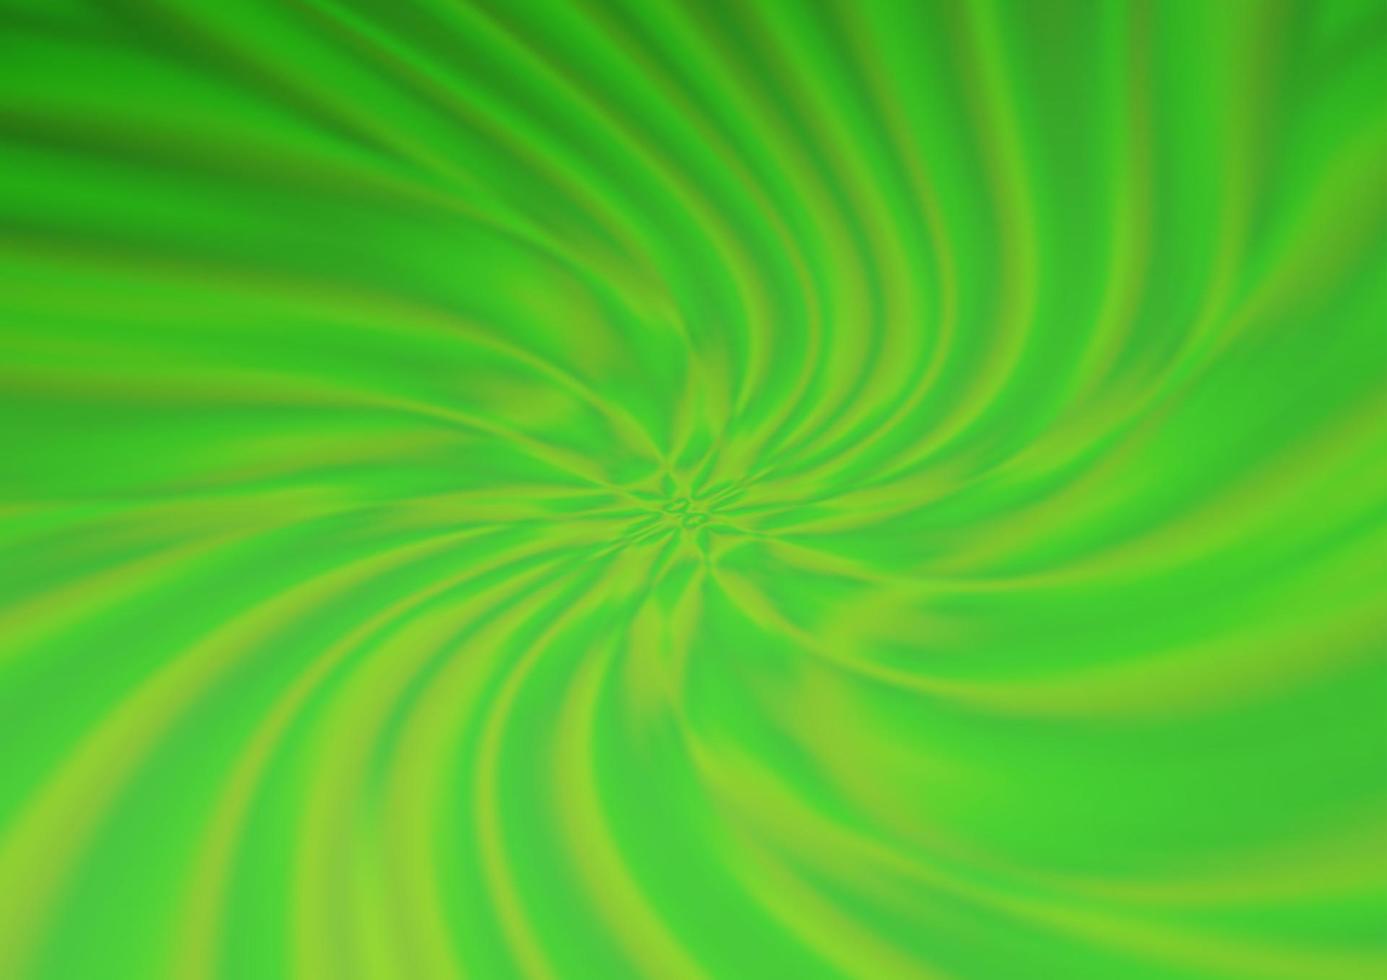 patrón borroso abstracto del vector verde claro.